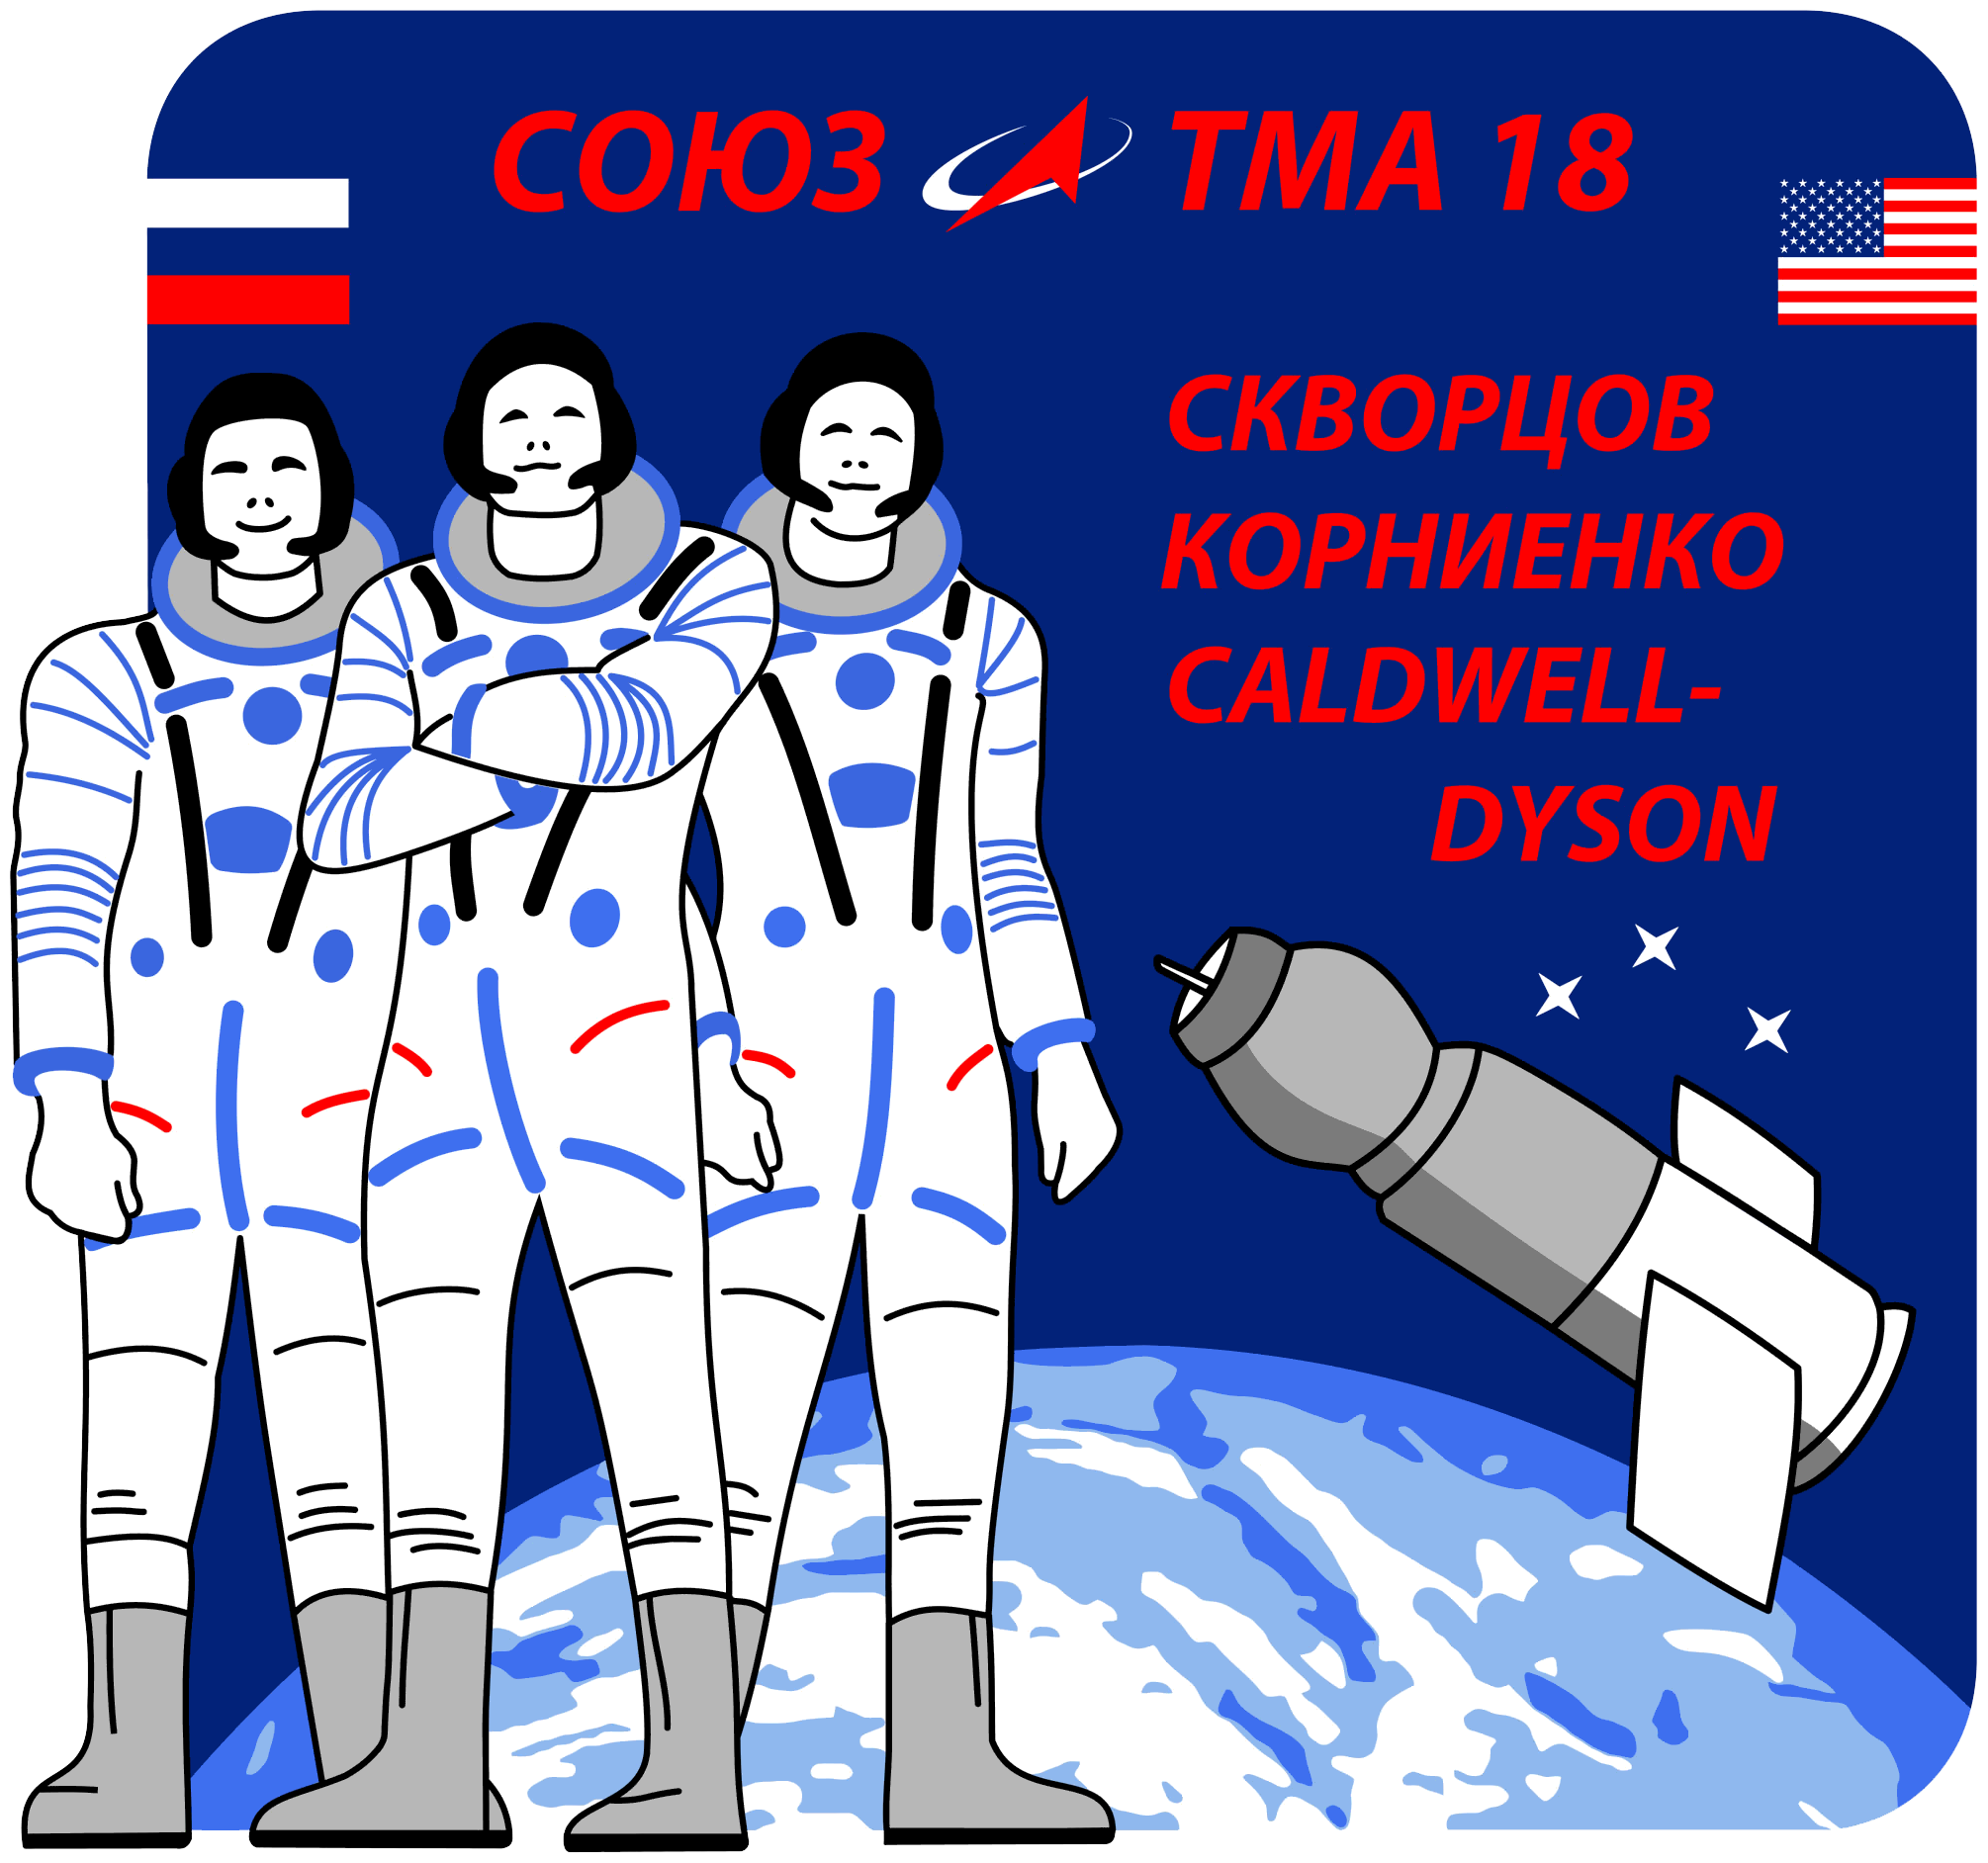 Soyuz TMA-18